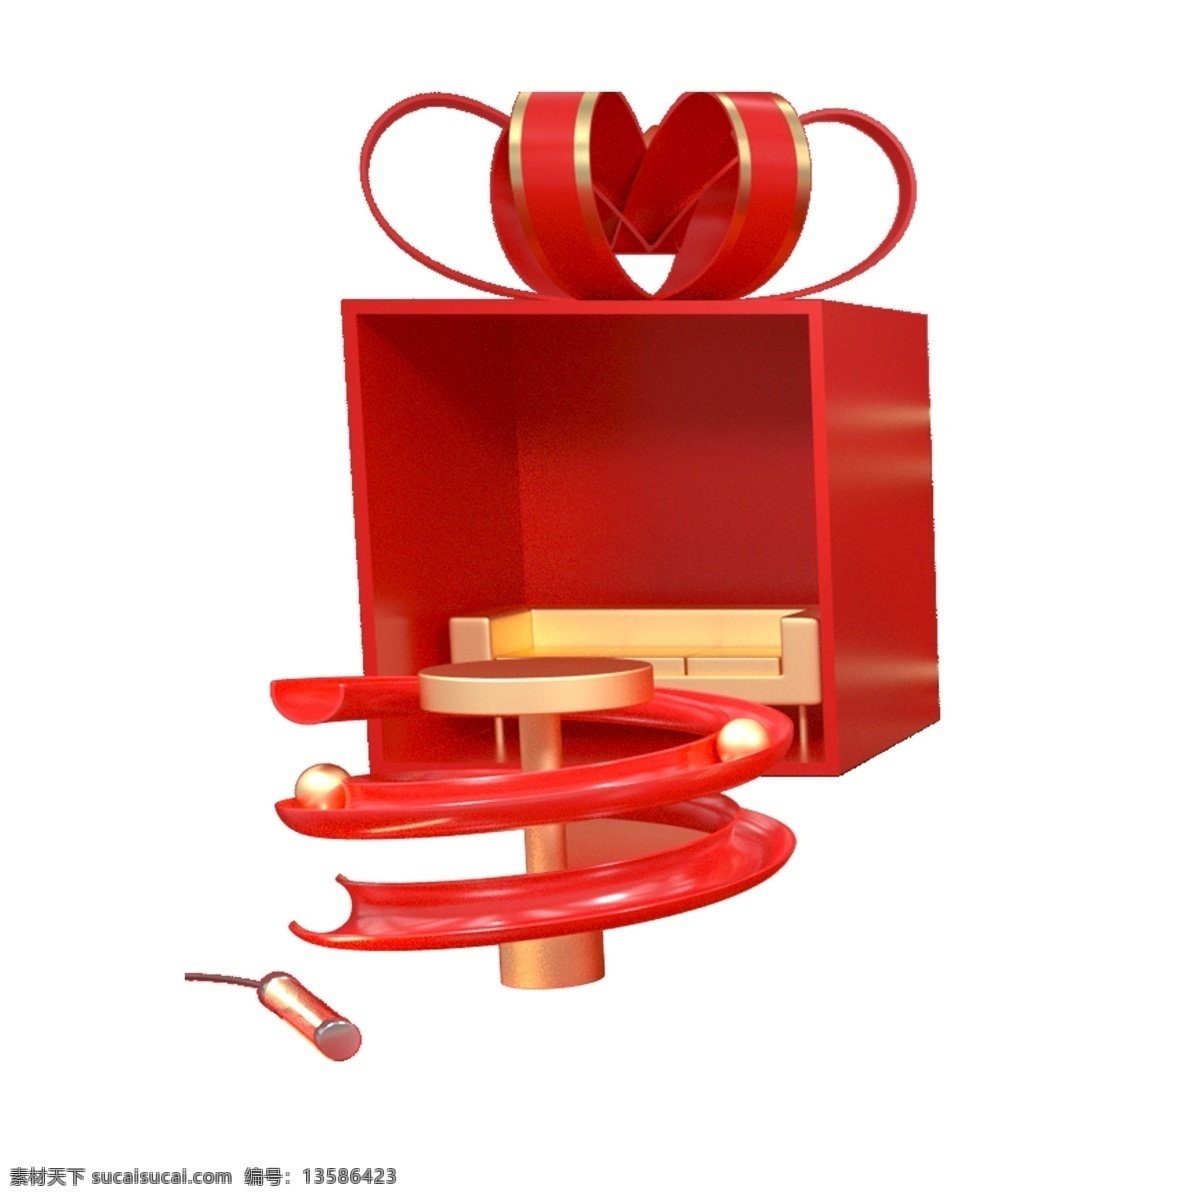 红色 包装 礼盒 免 抠 图 滑梯 礼物包装盒 卡通图案 卡通插画 时尚装饰品 红色丝带 红色正方体 红色喜庆礼盒